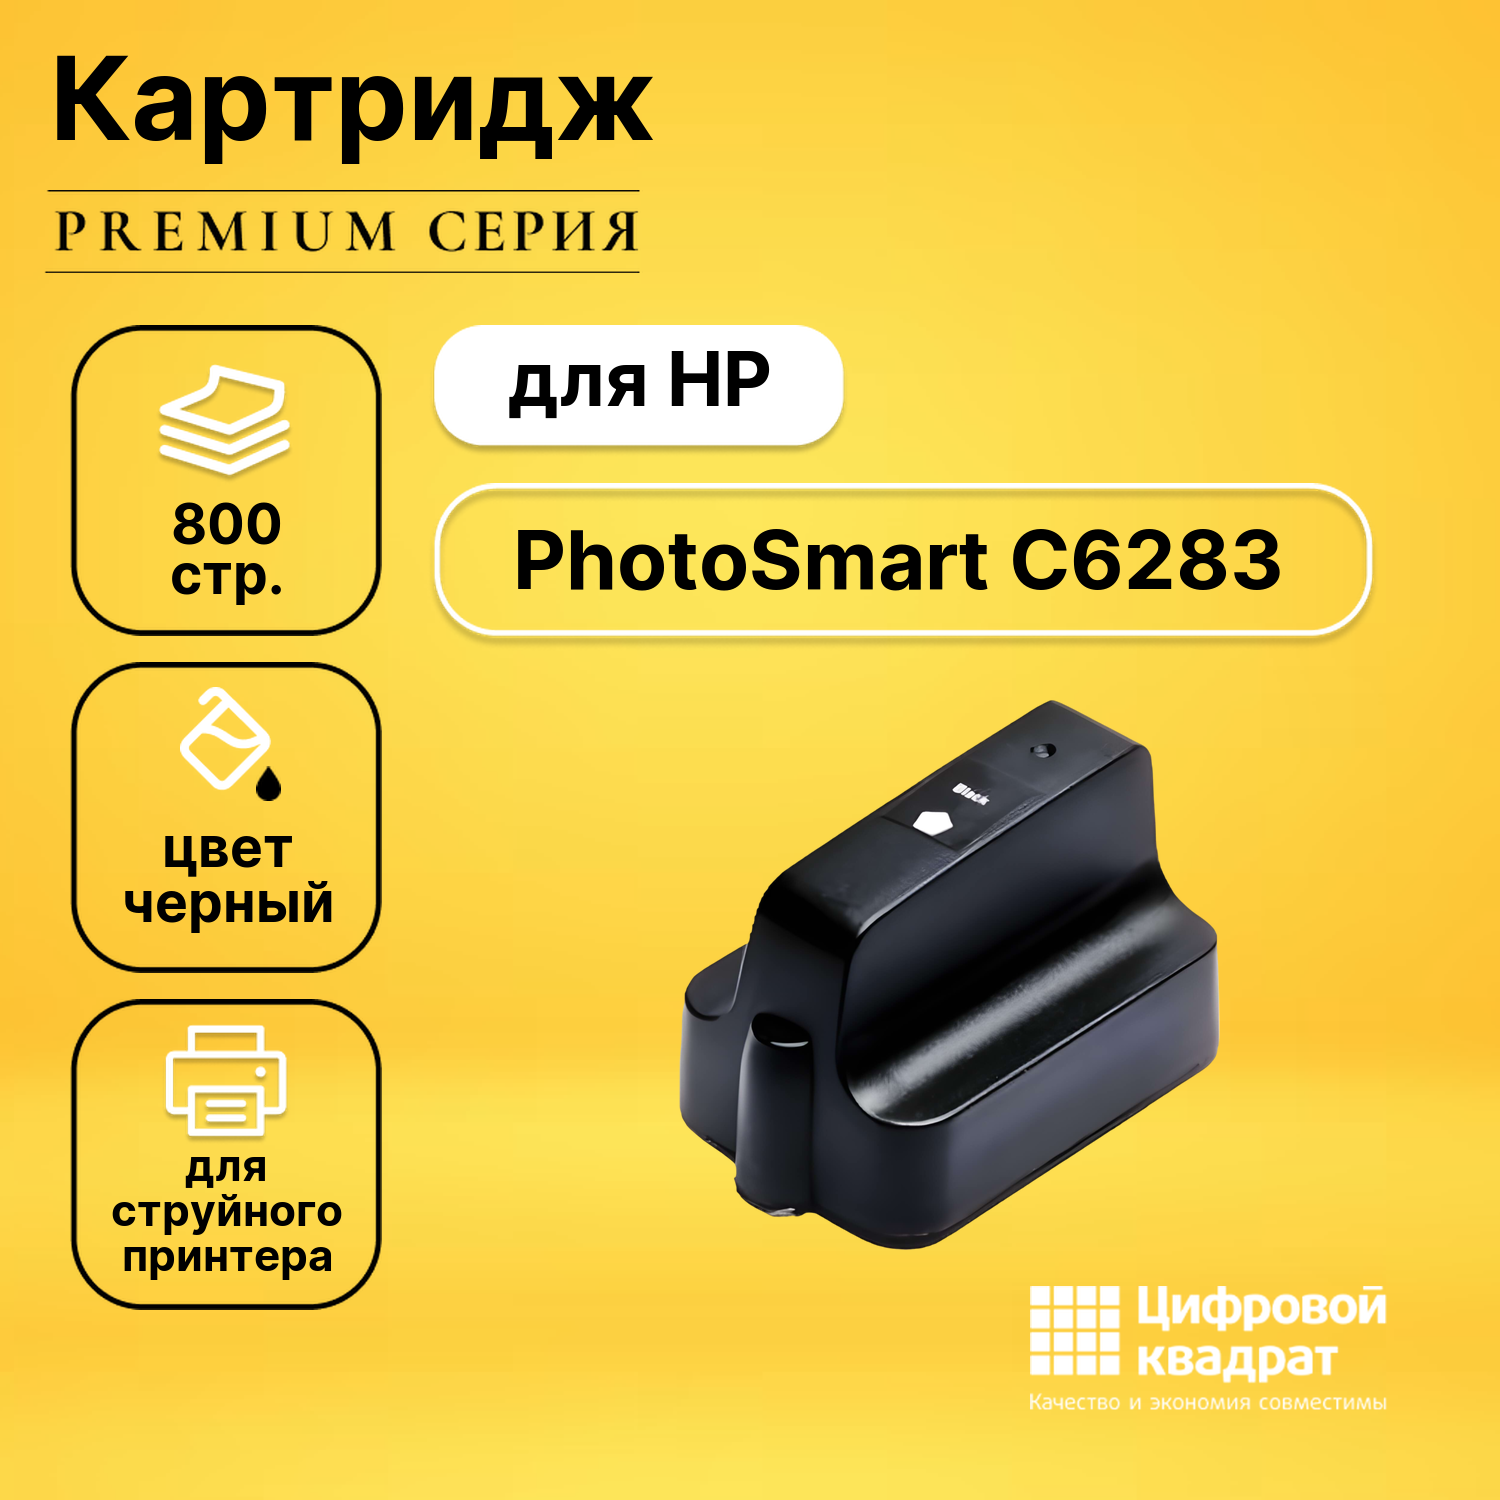 Картридж DS для HP PhotoSmart C6283 увеличенный ресурс совместимый